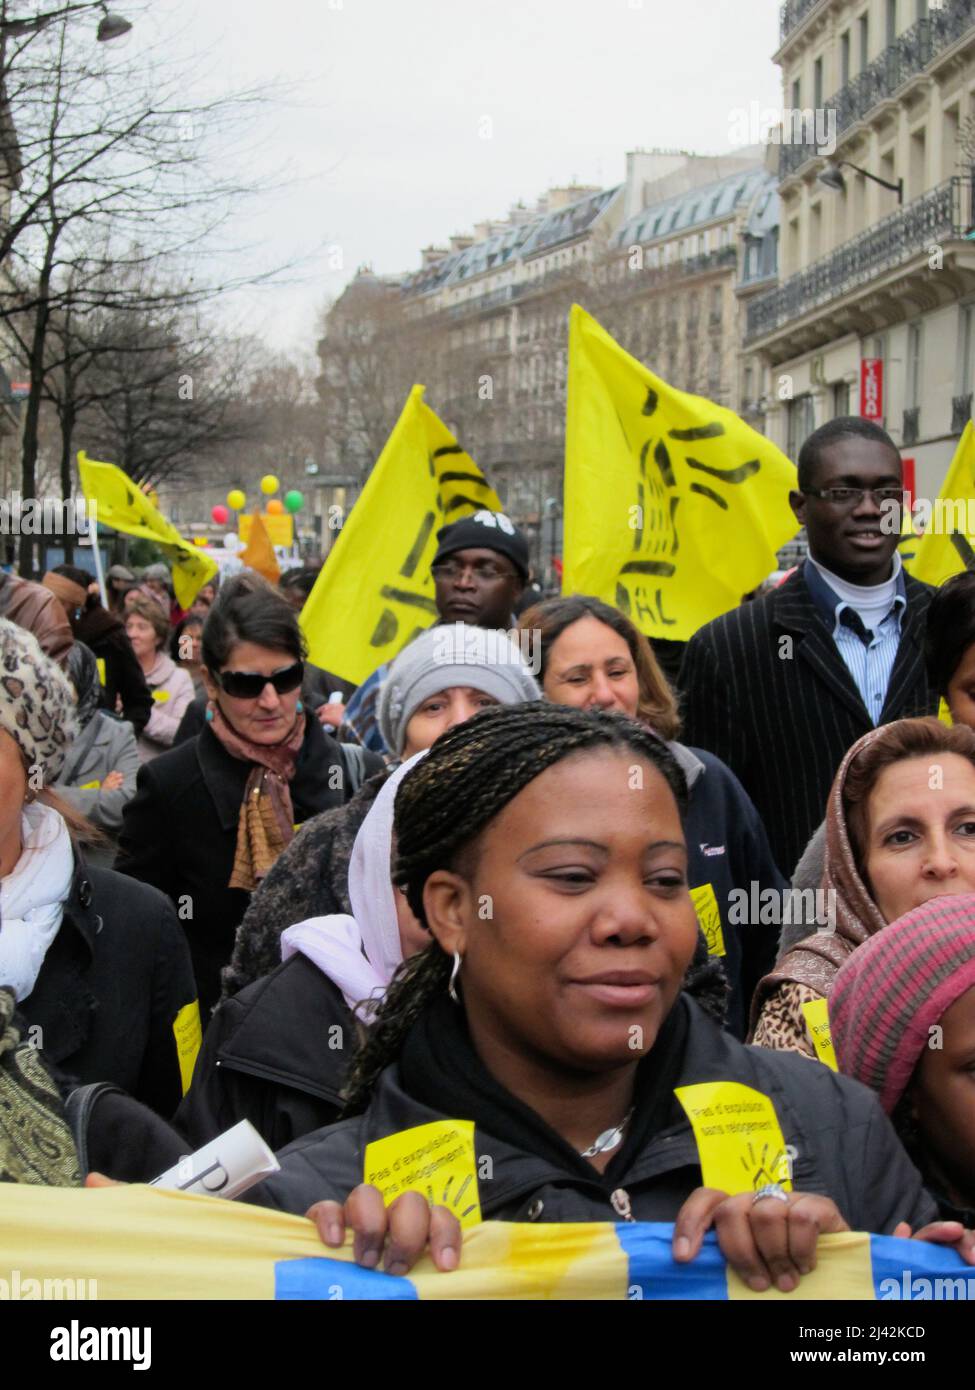 Paris, France, foule de gens marchant avec des signes de protestation, démonstration de migrants africains pour le droit au logement permanent, Banque D'Images